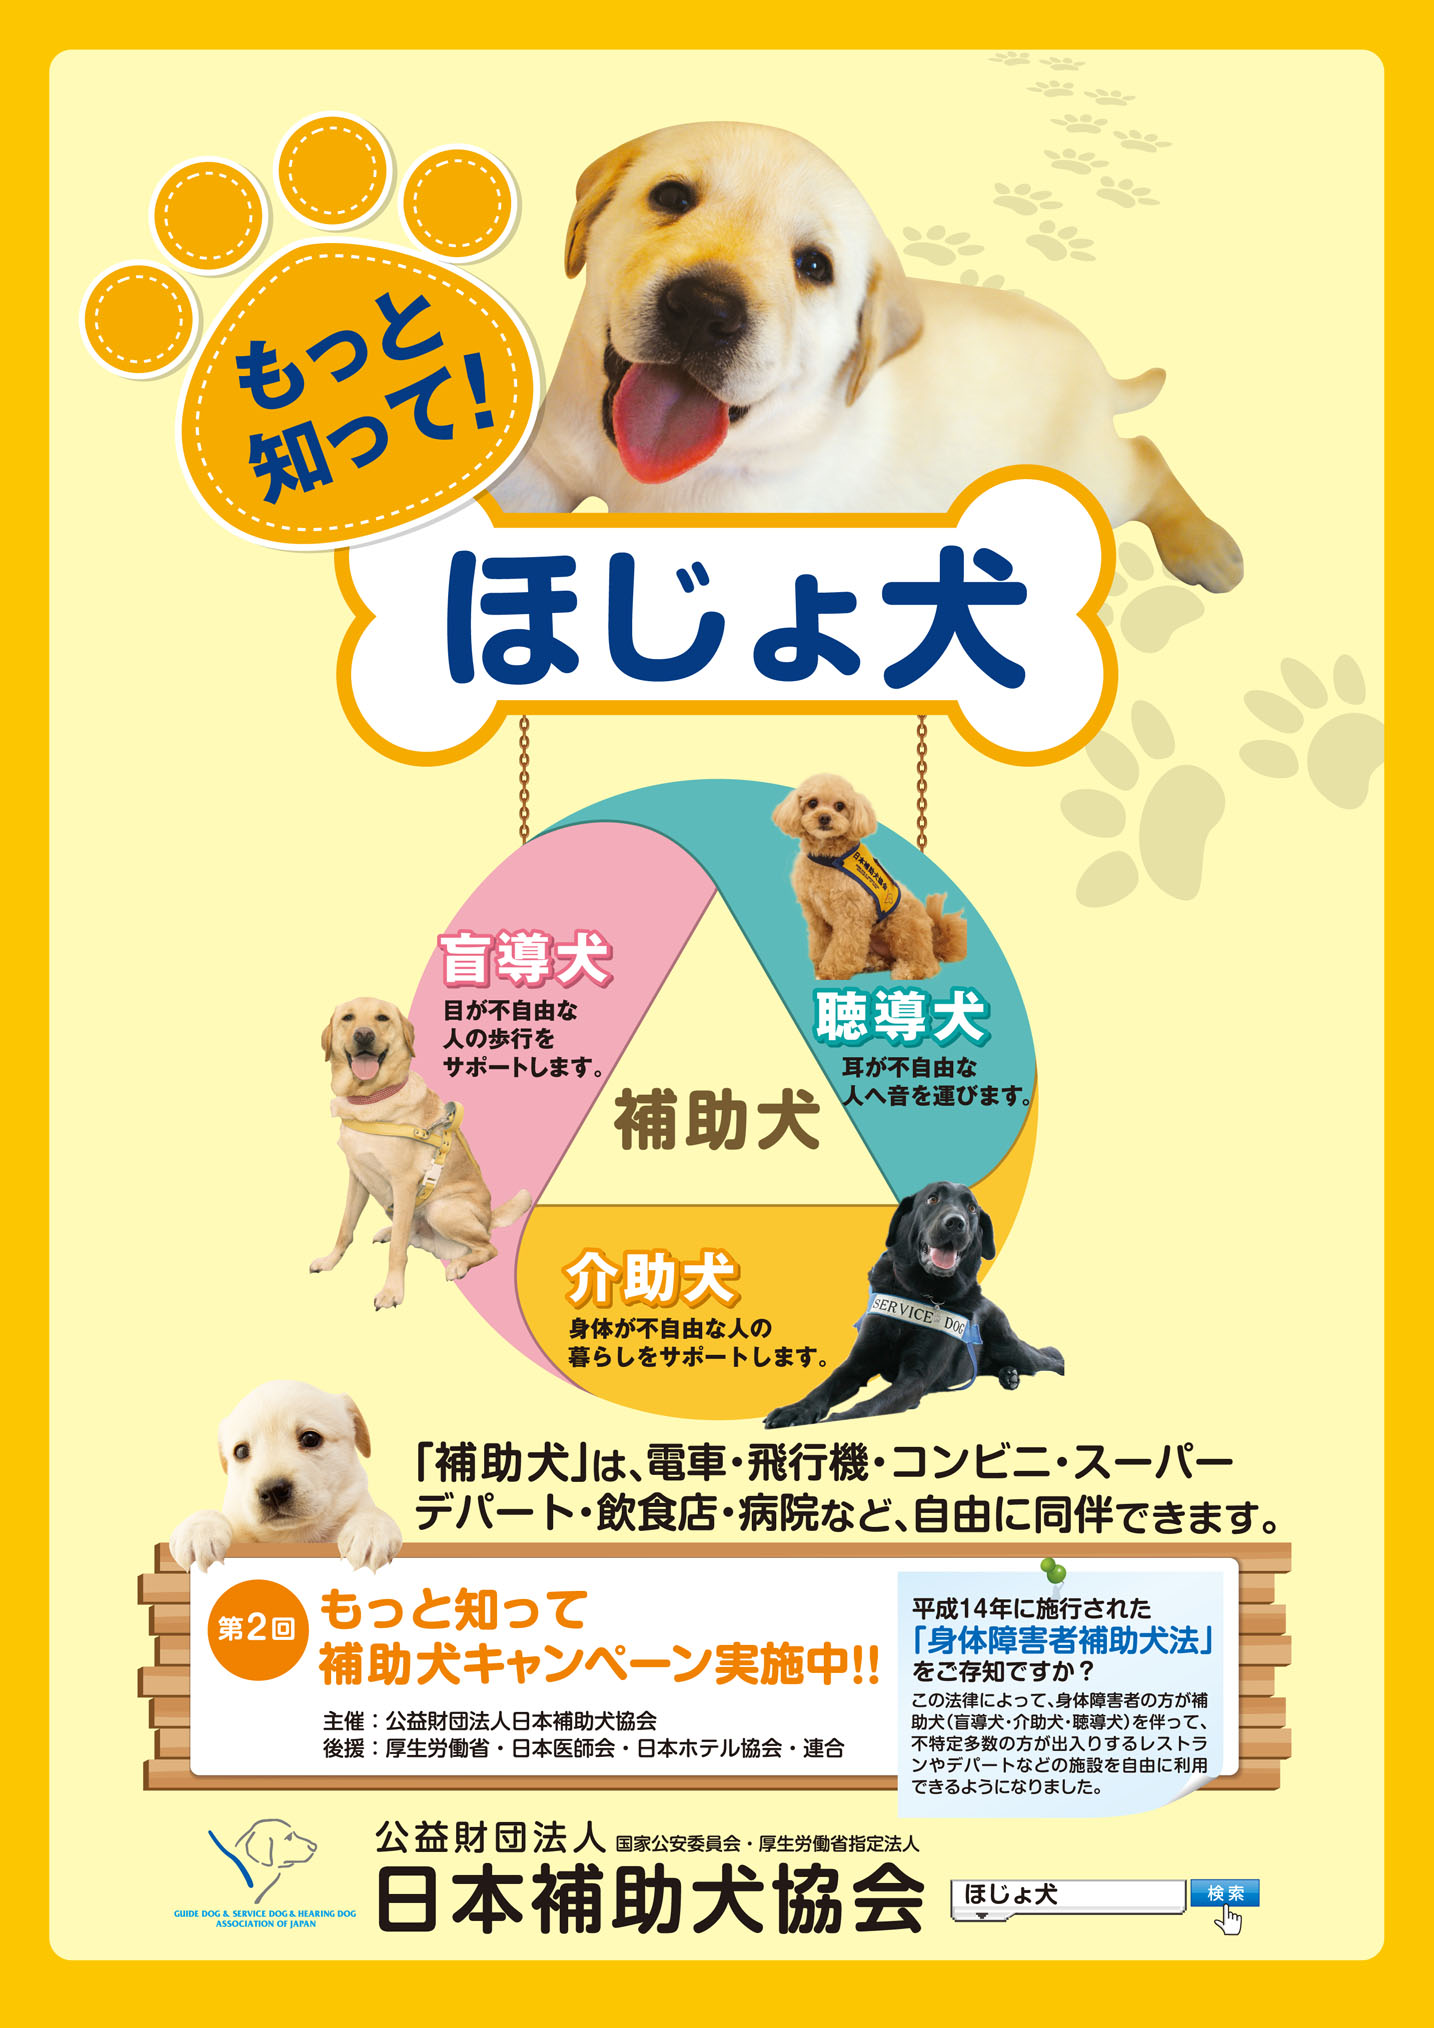 公益財団法人日本補助犬協会 日本で唯一3種類 盲導犬 介助犬 聴導犬 の補助犬を育成および認定できる団体